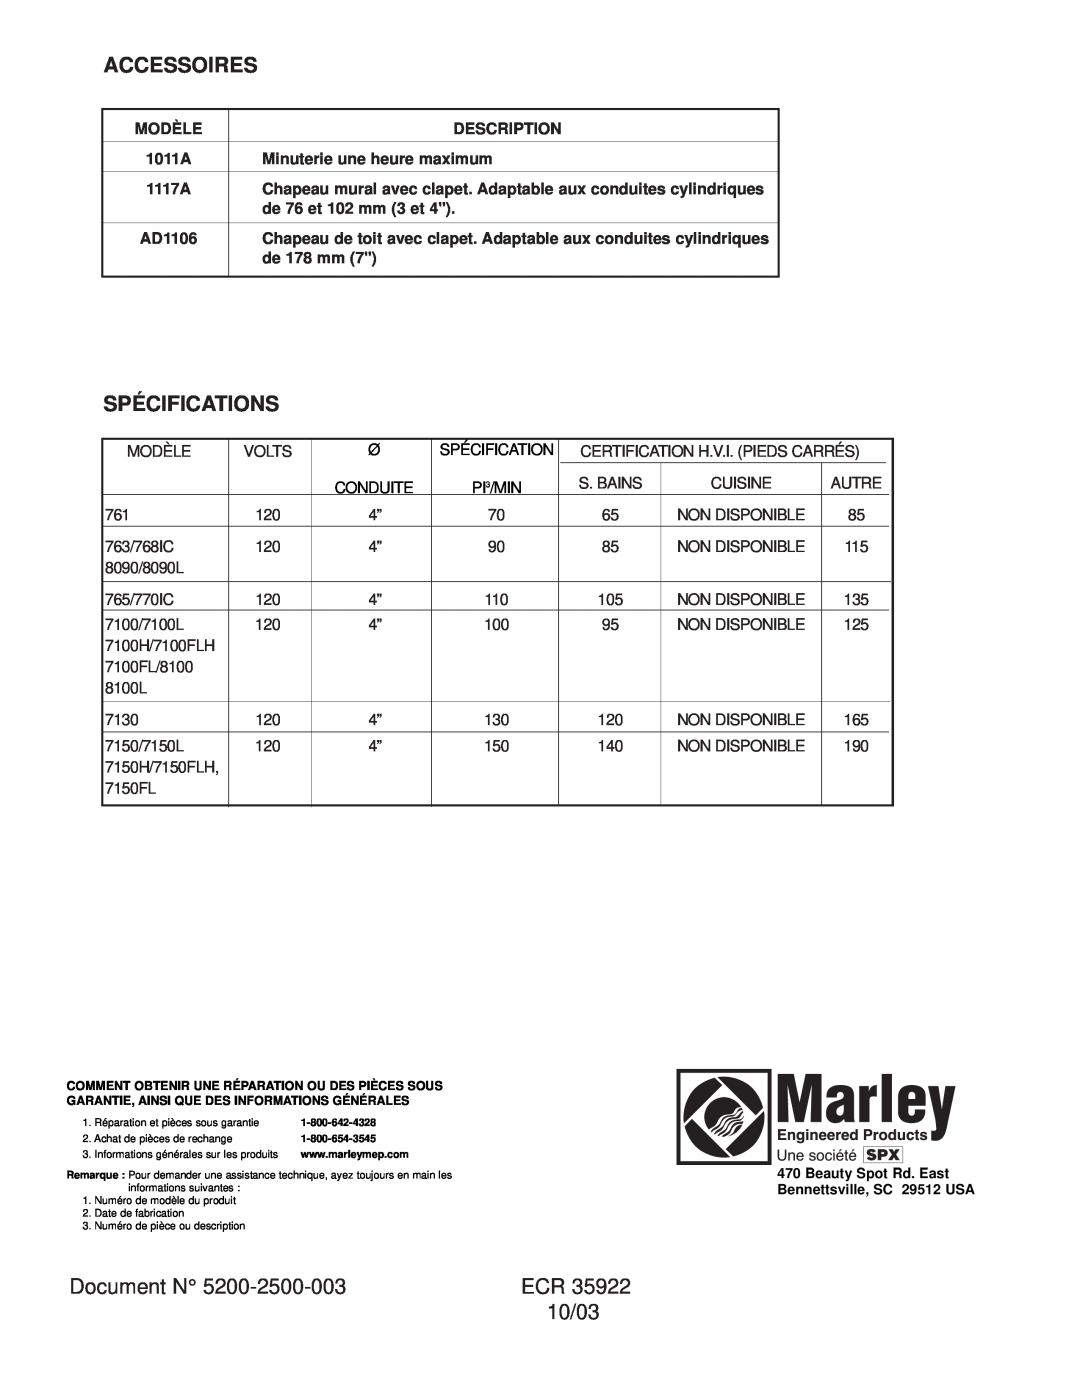 Marley Engineered Products 7150 Accessoires, Spécifications, Document N, 10/03, Modèle, Description, de 76 et 102 mm 3 et 